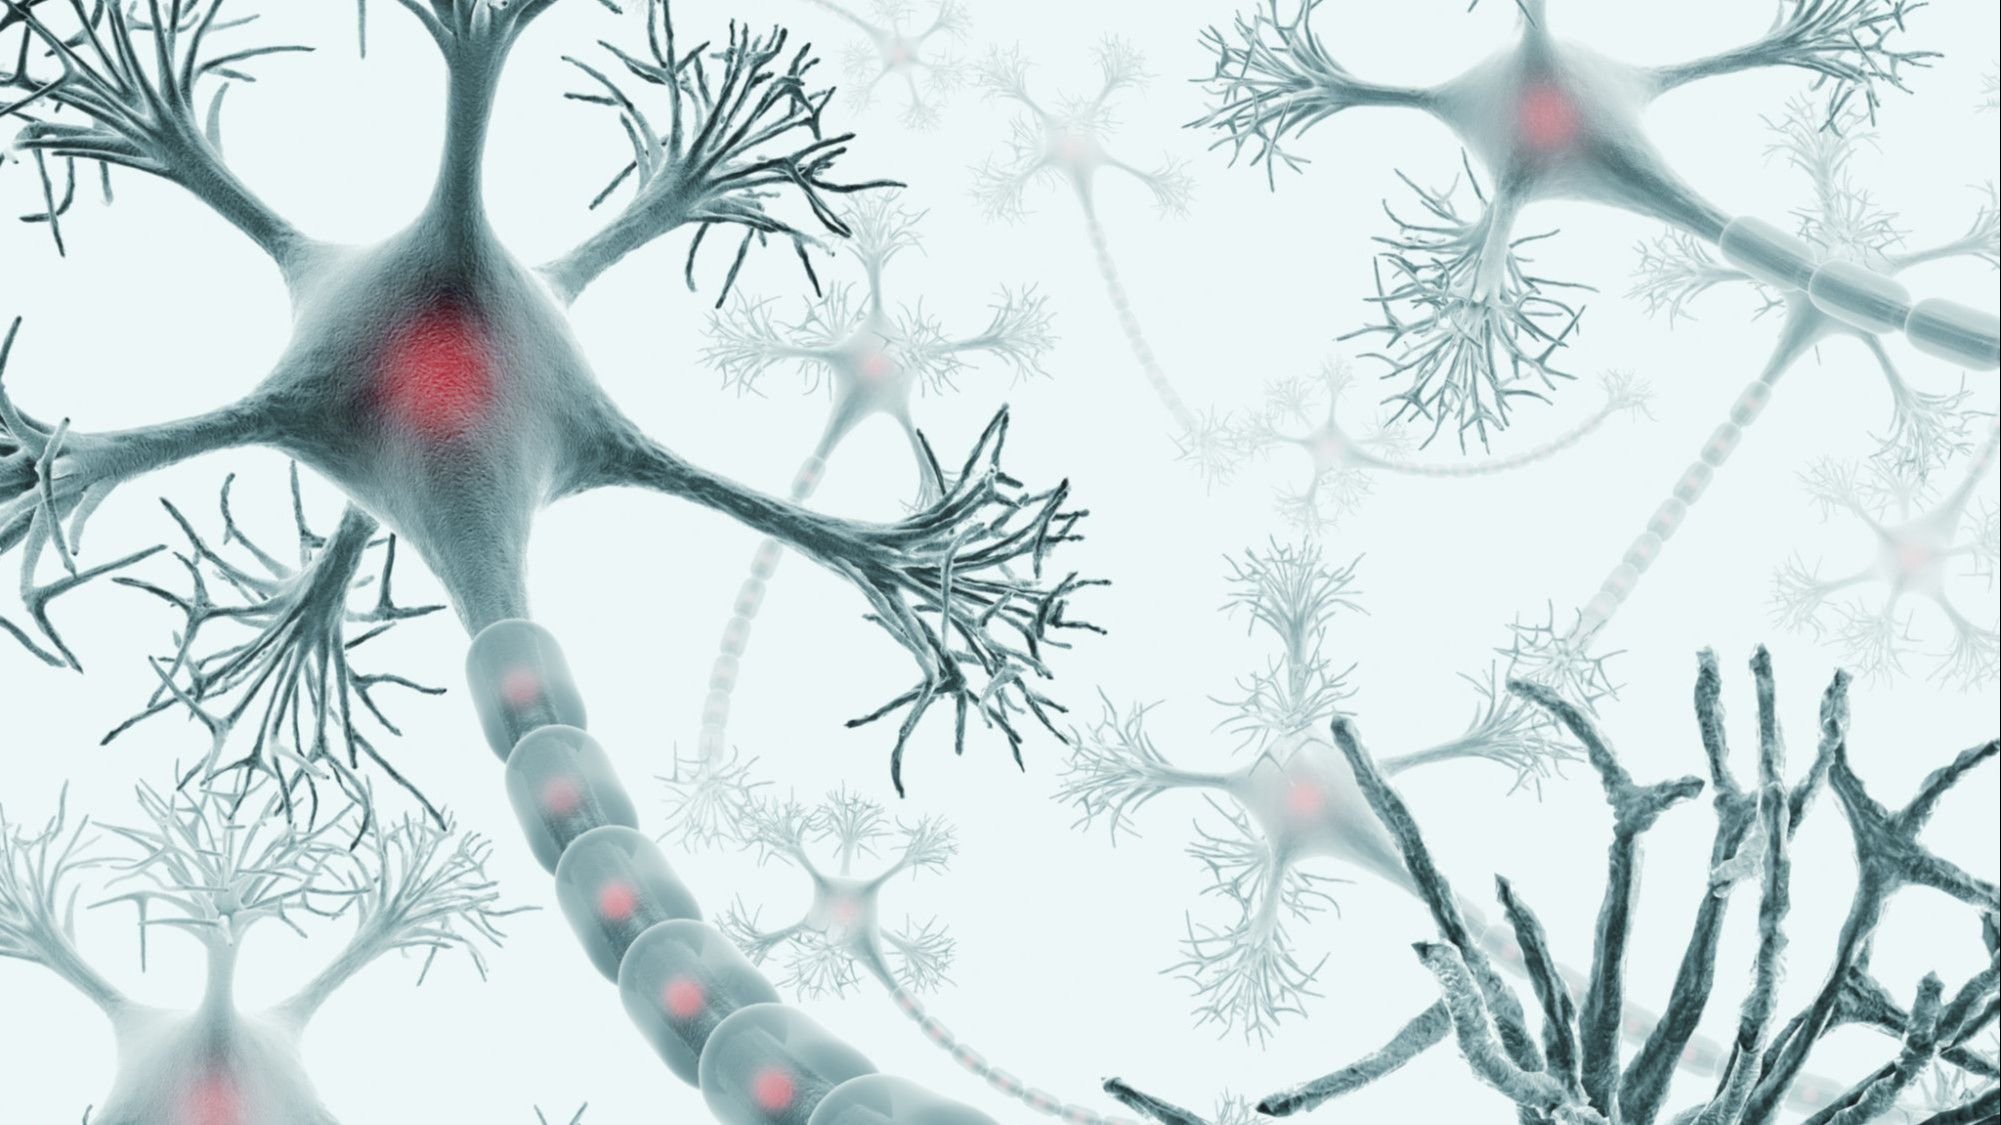 Las neuronas se regeneran